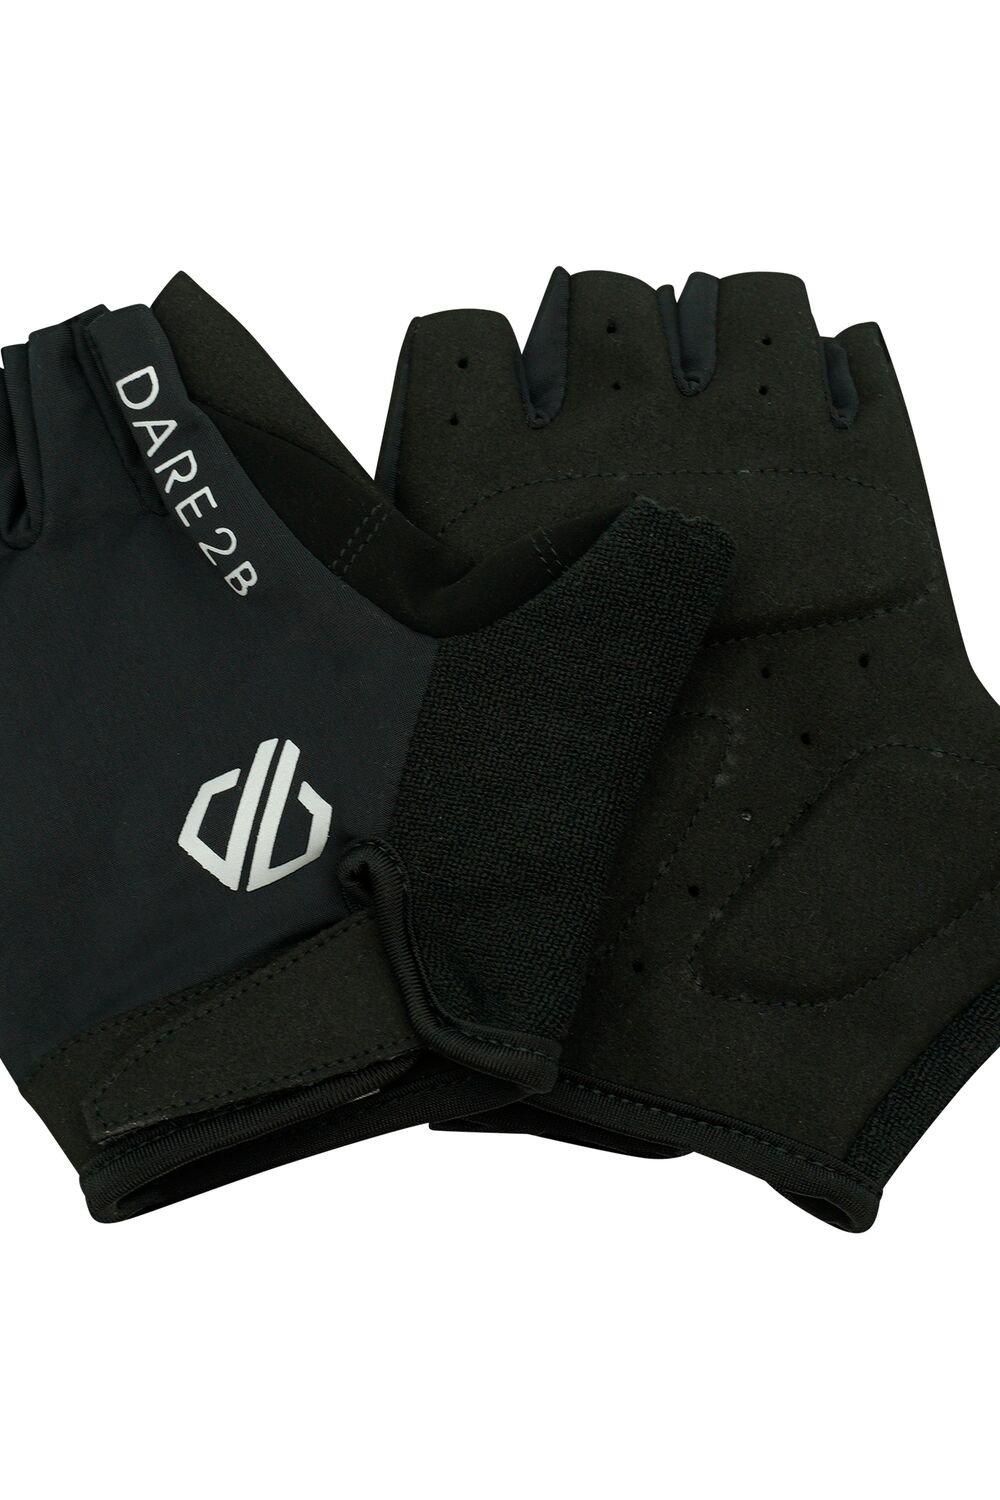 Перчатки без пальцев с выдвинутой педалью Dare 2b, черный комплект для заправки аккумулятора дистиллированная вода перчатки влажная салфетка